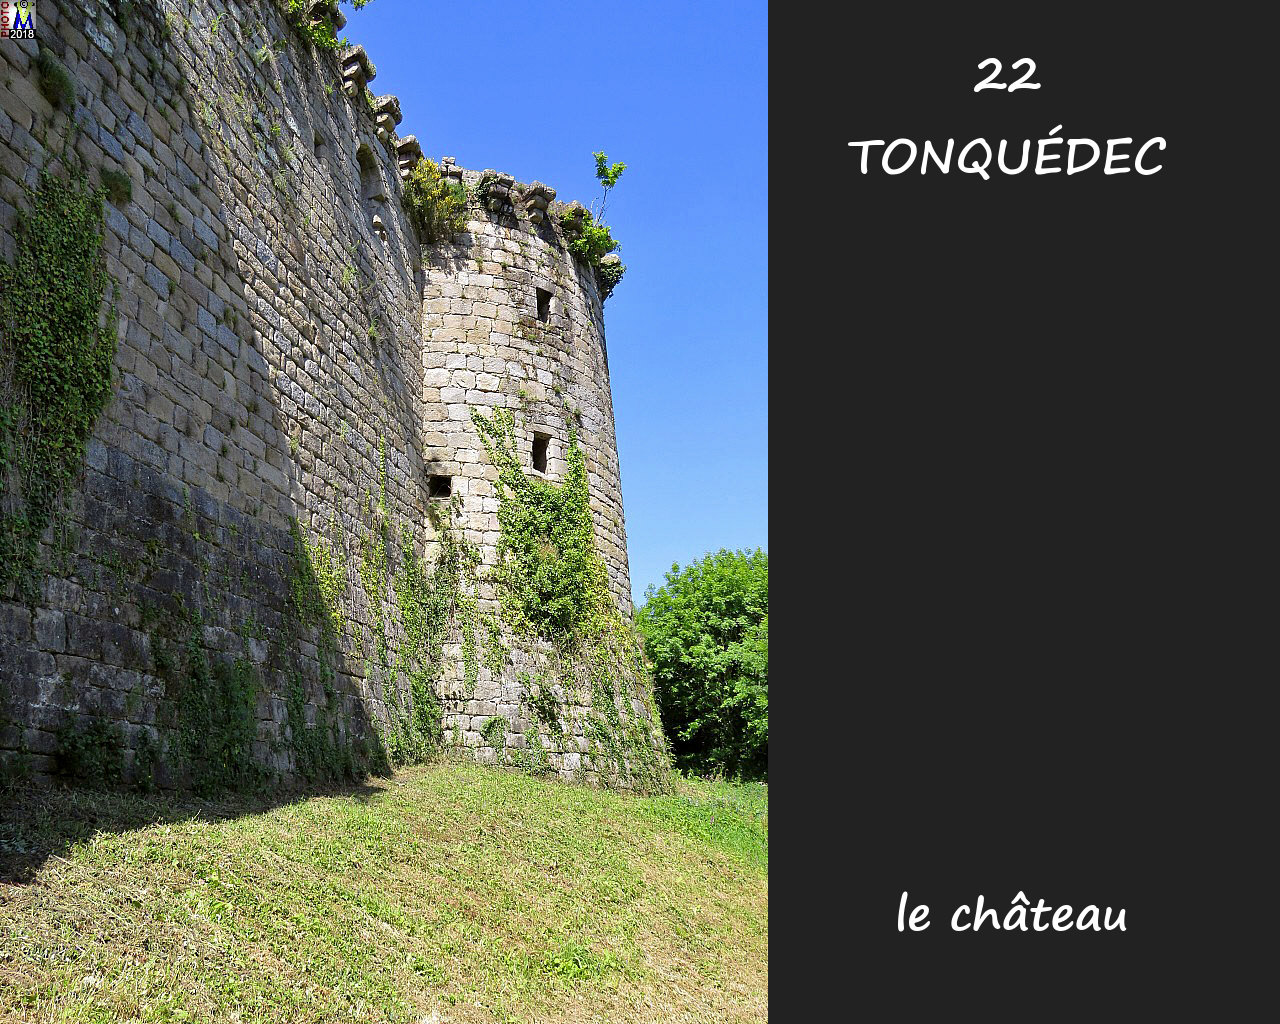 22TONQUEDEC_chateau_120.jpg